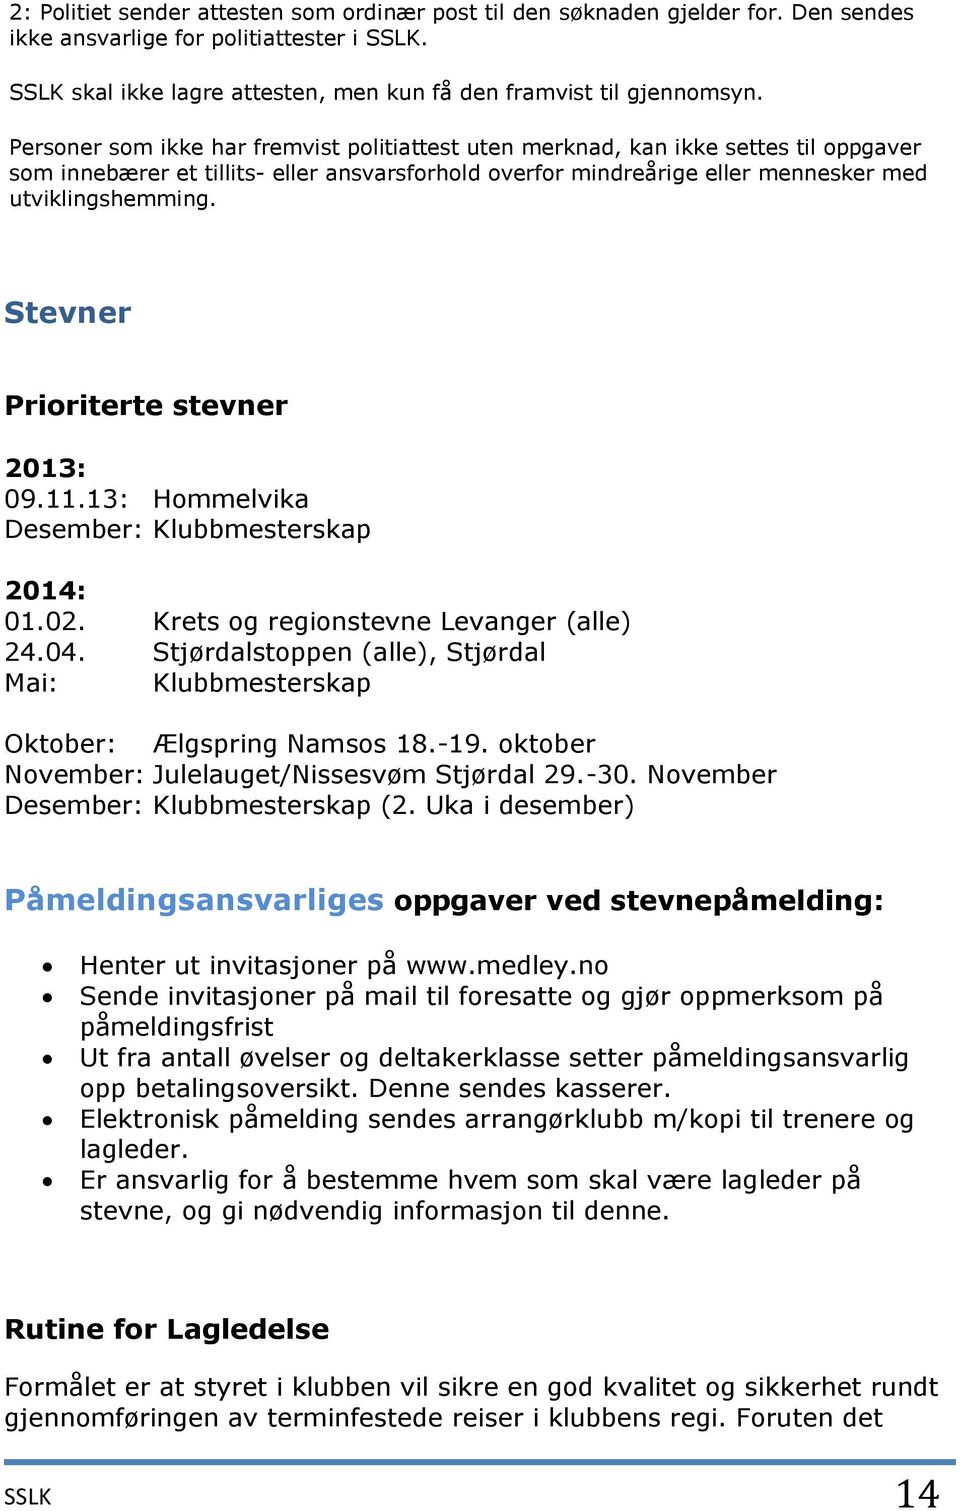 Stevner Prioriterte stevner 2013: 09.11.13: Hommelvika Desember: Klubbmesterskap 2014: 01.02. Krets og regionstevne Levanger (alle) 24.04.